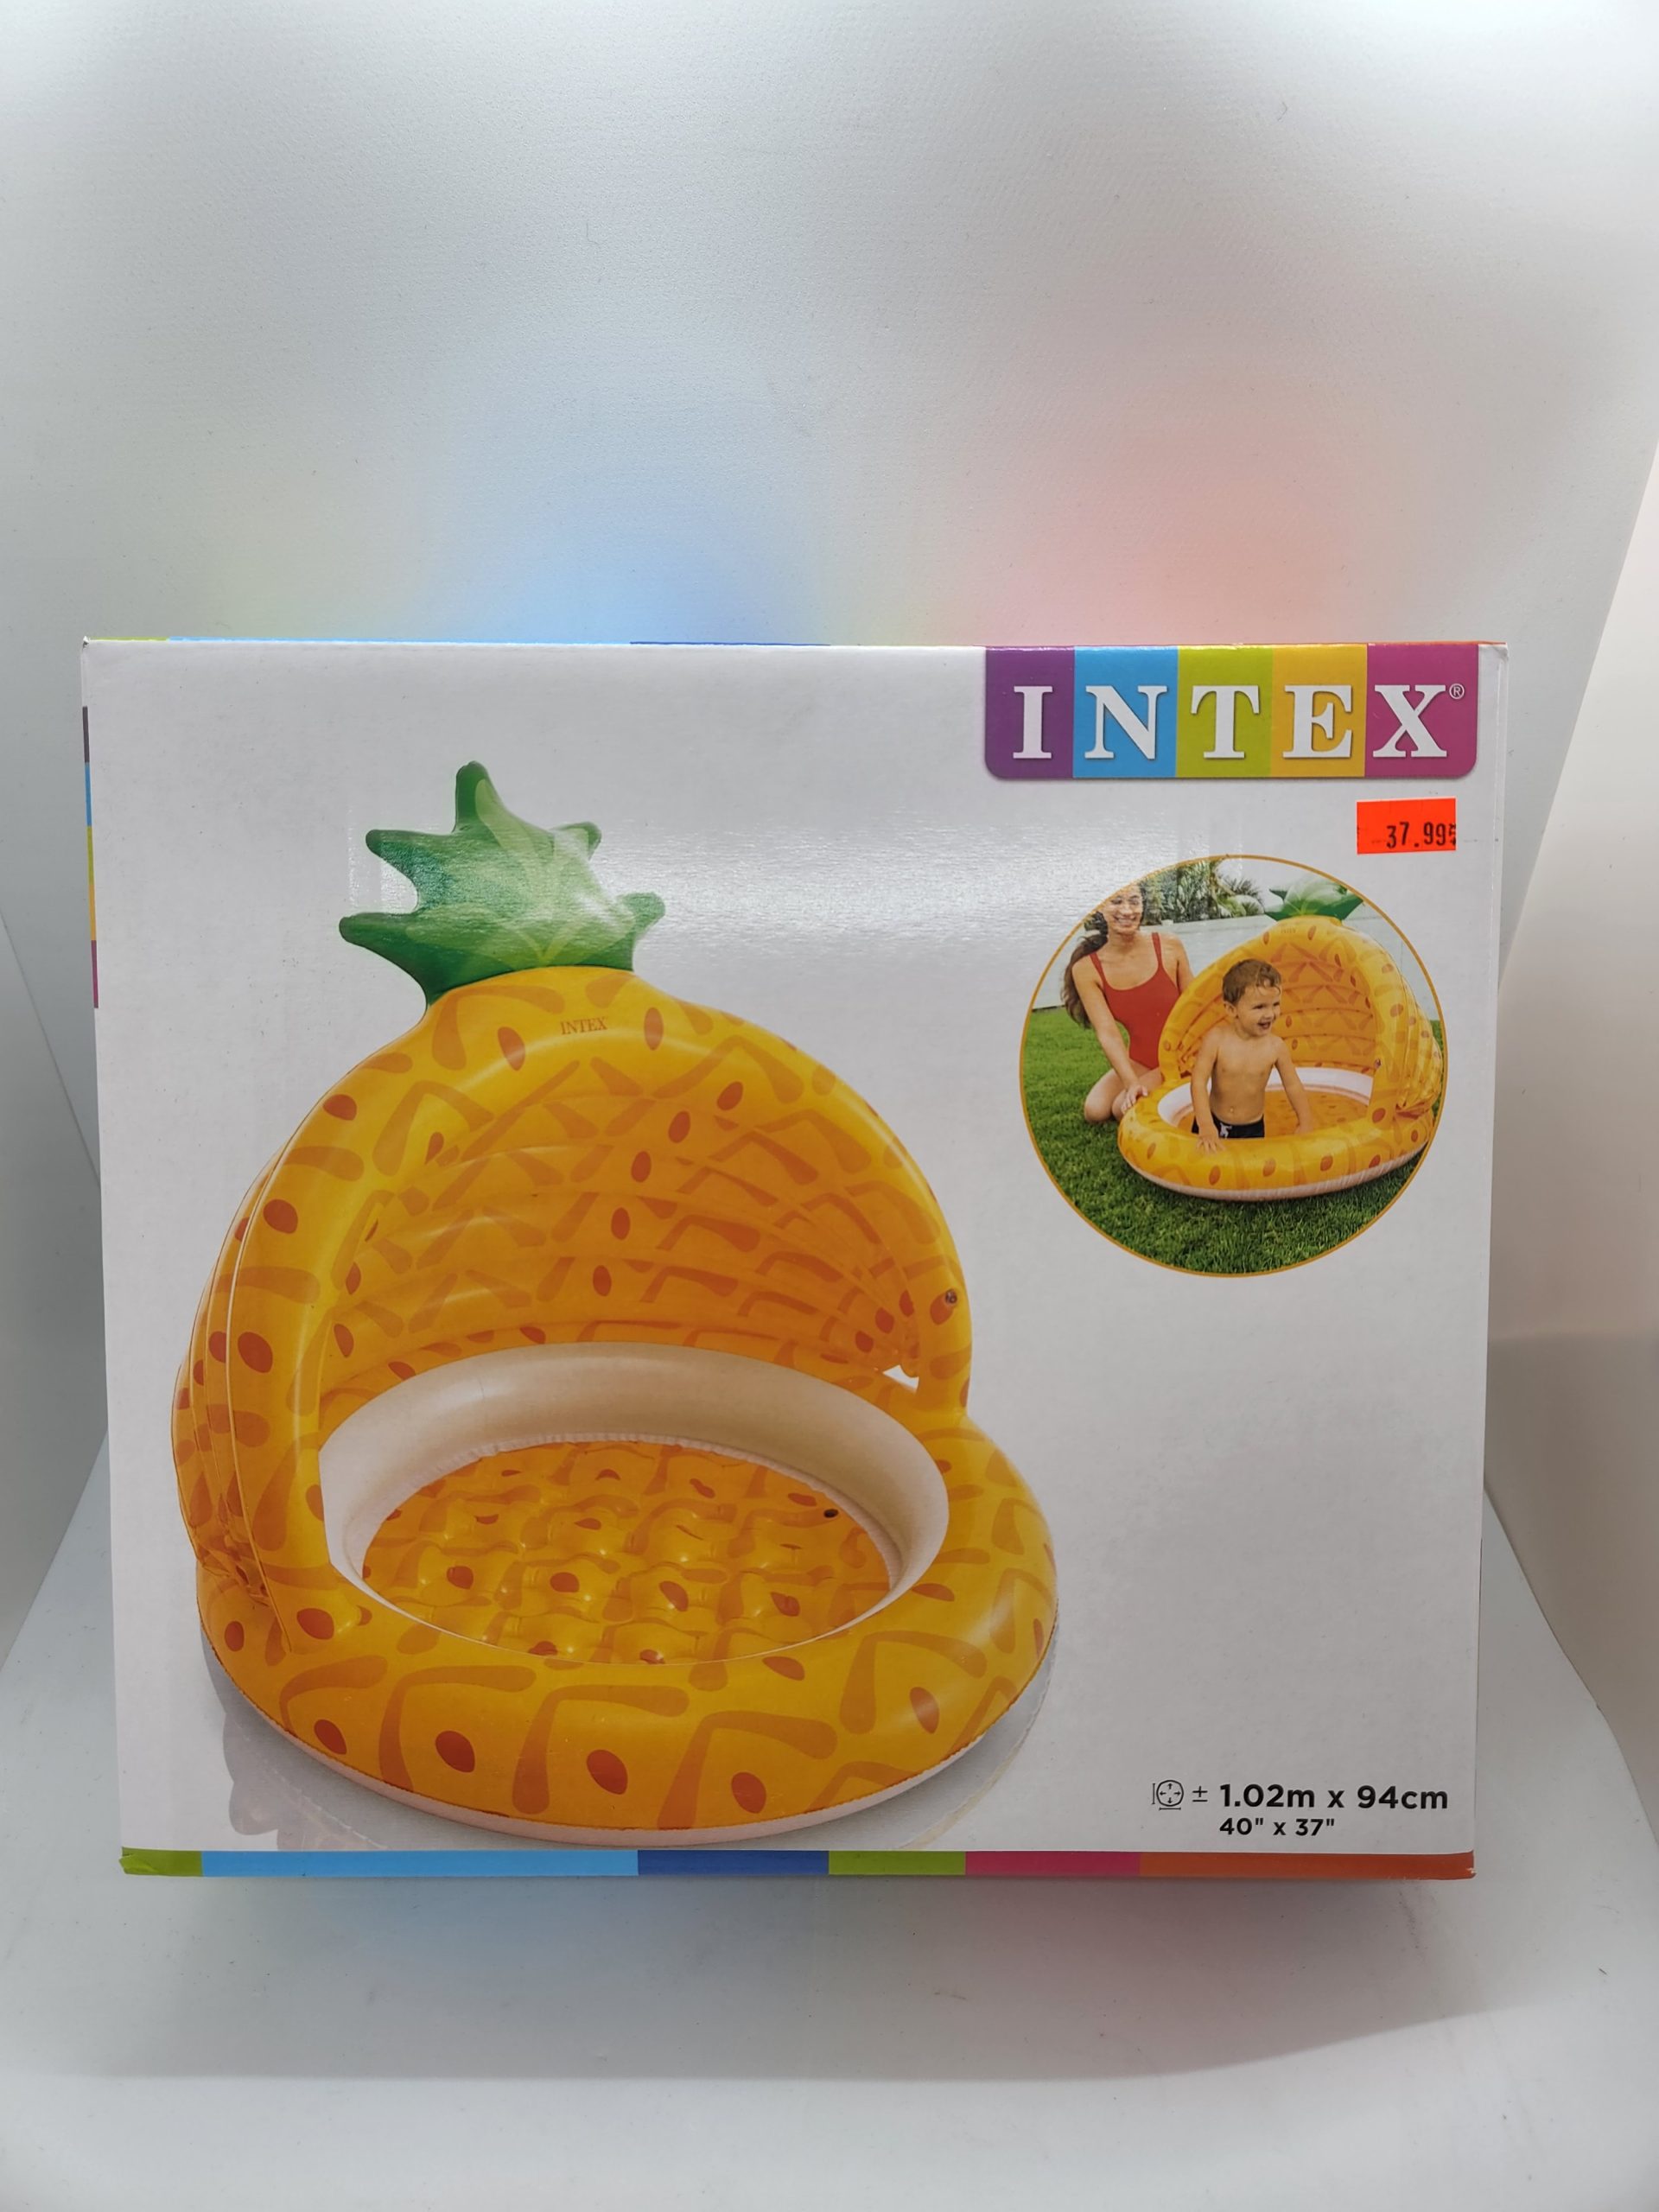 INTEX Matelas gonflable enfant Jaune 1 place - Intex pas cher 